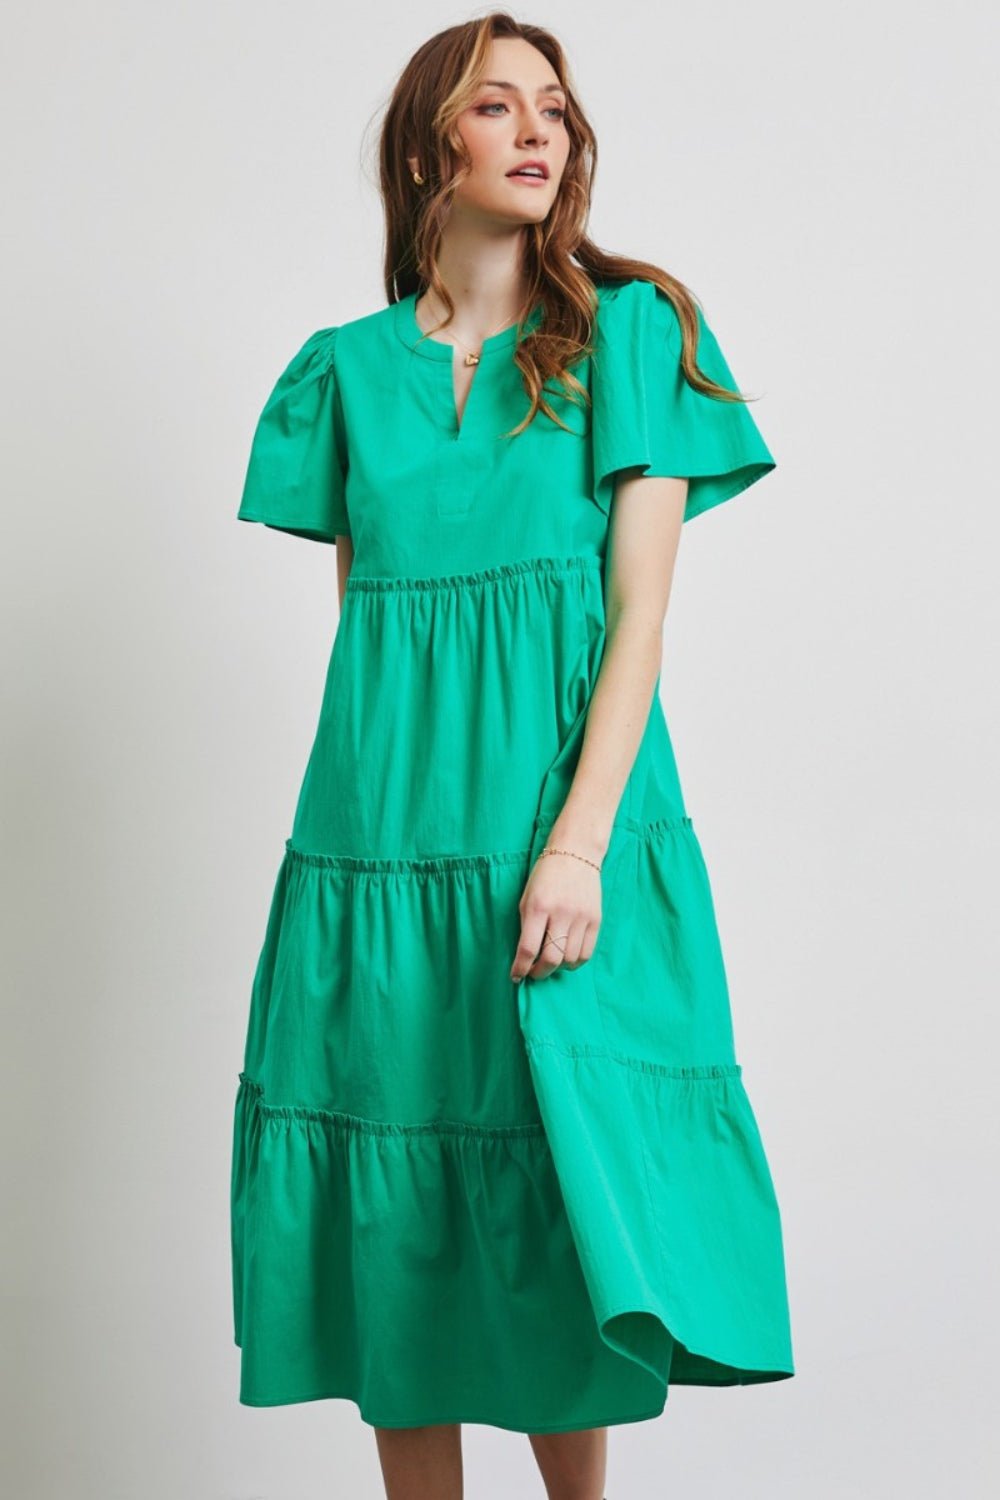 Cotton Poplin Ruffled Tiered Midi Dress in Emerald GreenMidi DressHEYSON